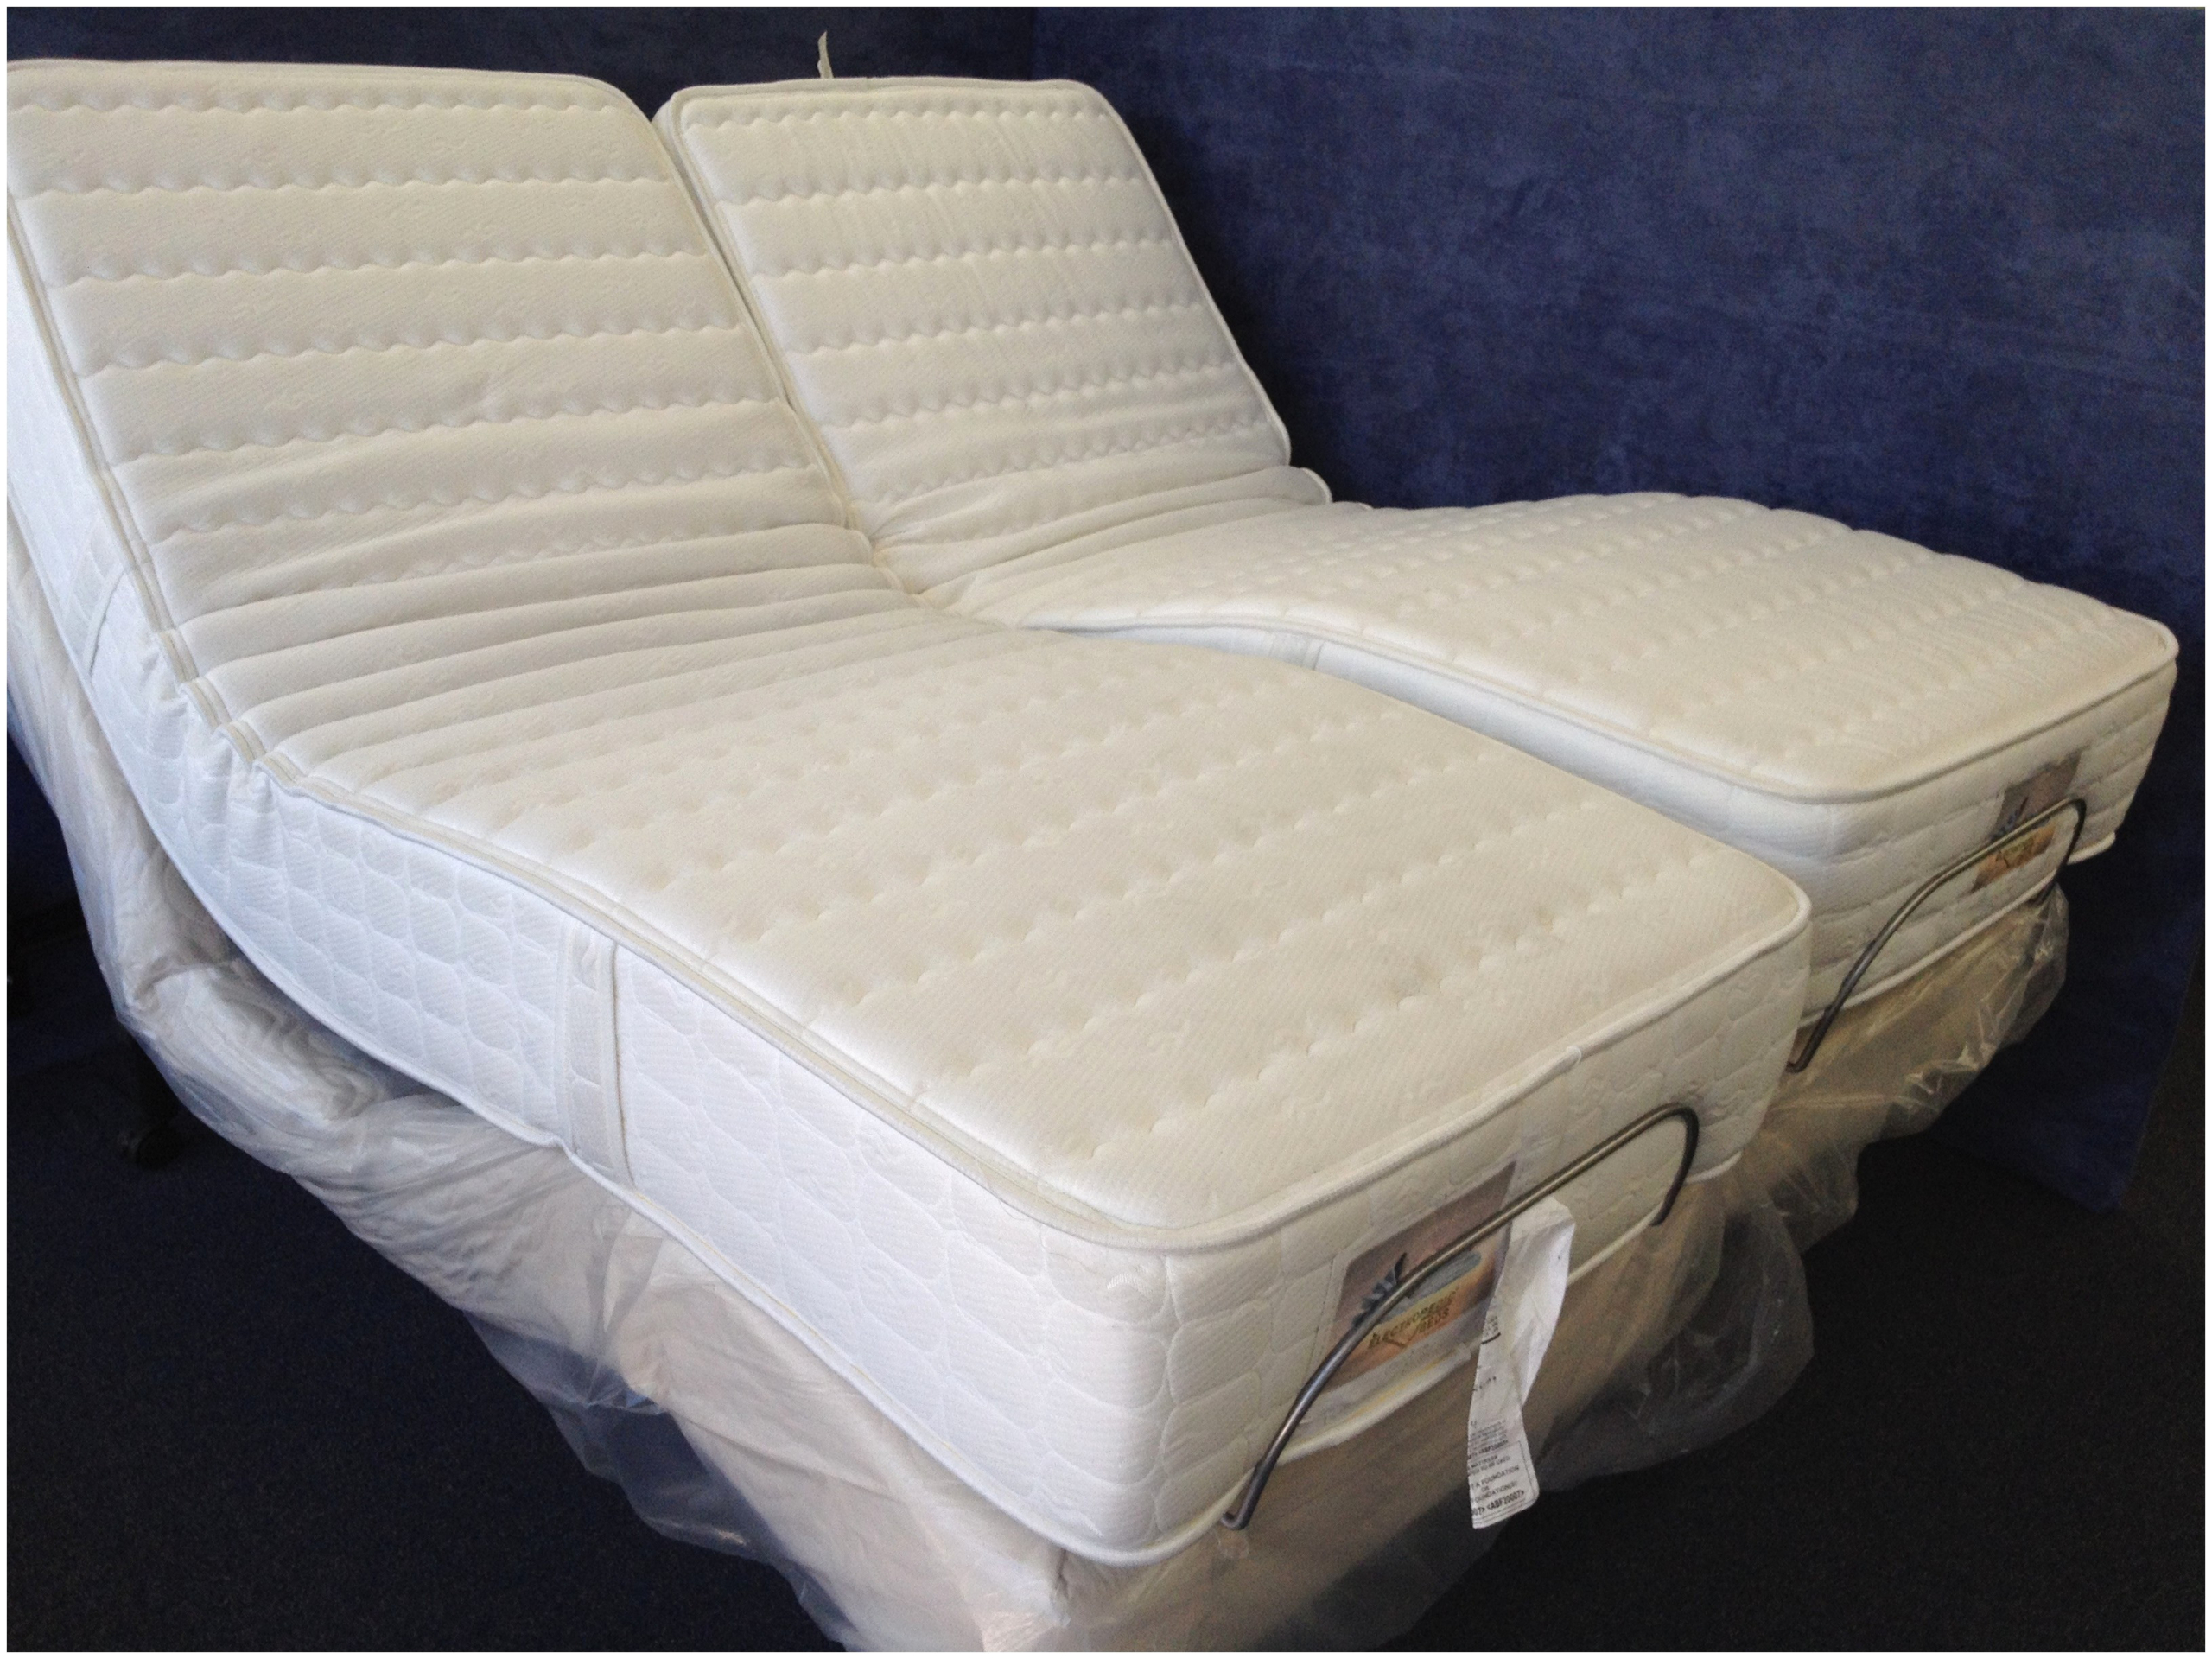 Split Queen Adjustable Bed Visualhunt, Queen Size Dual Adjustable Bed